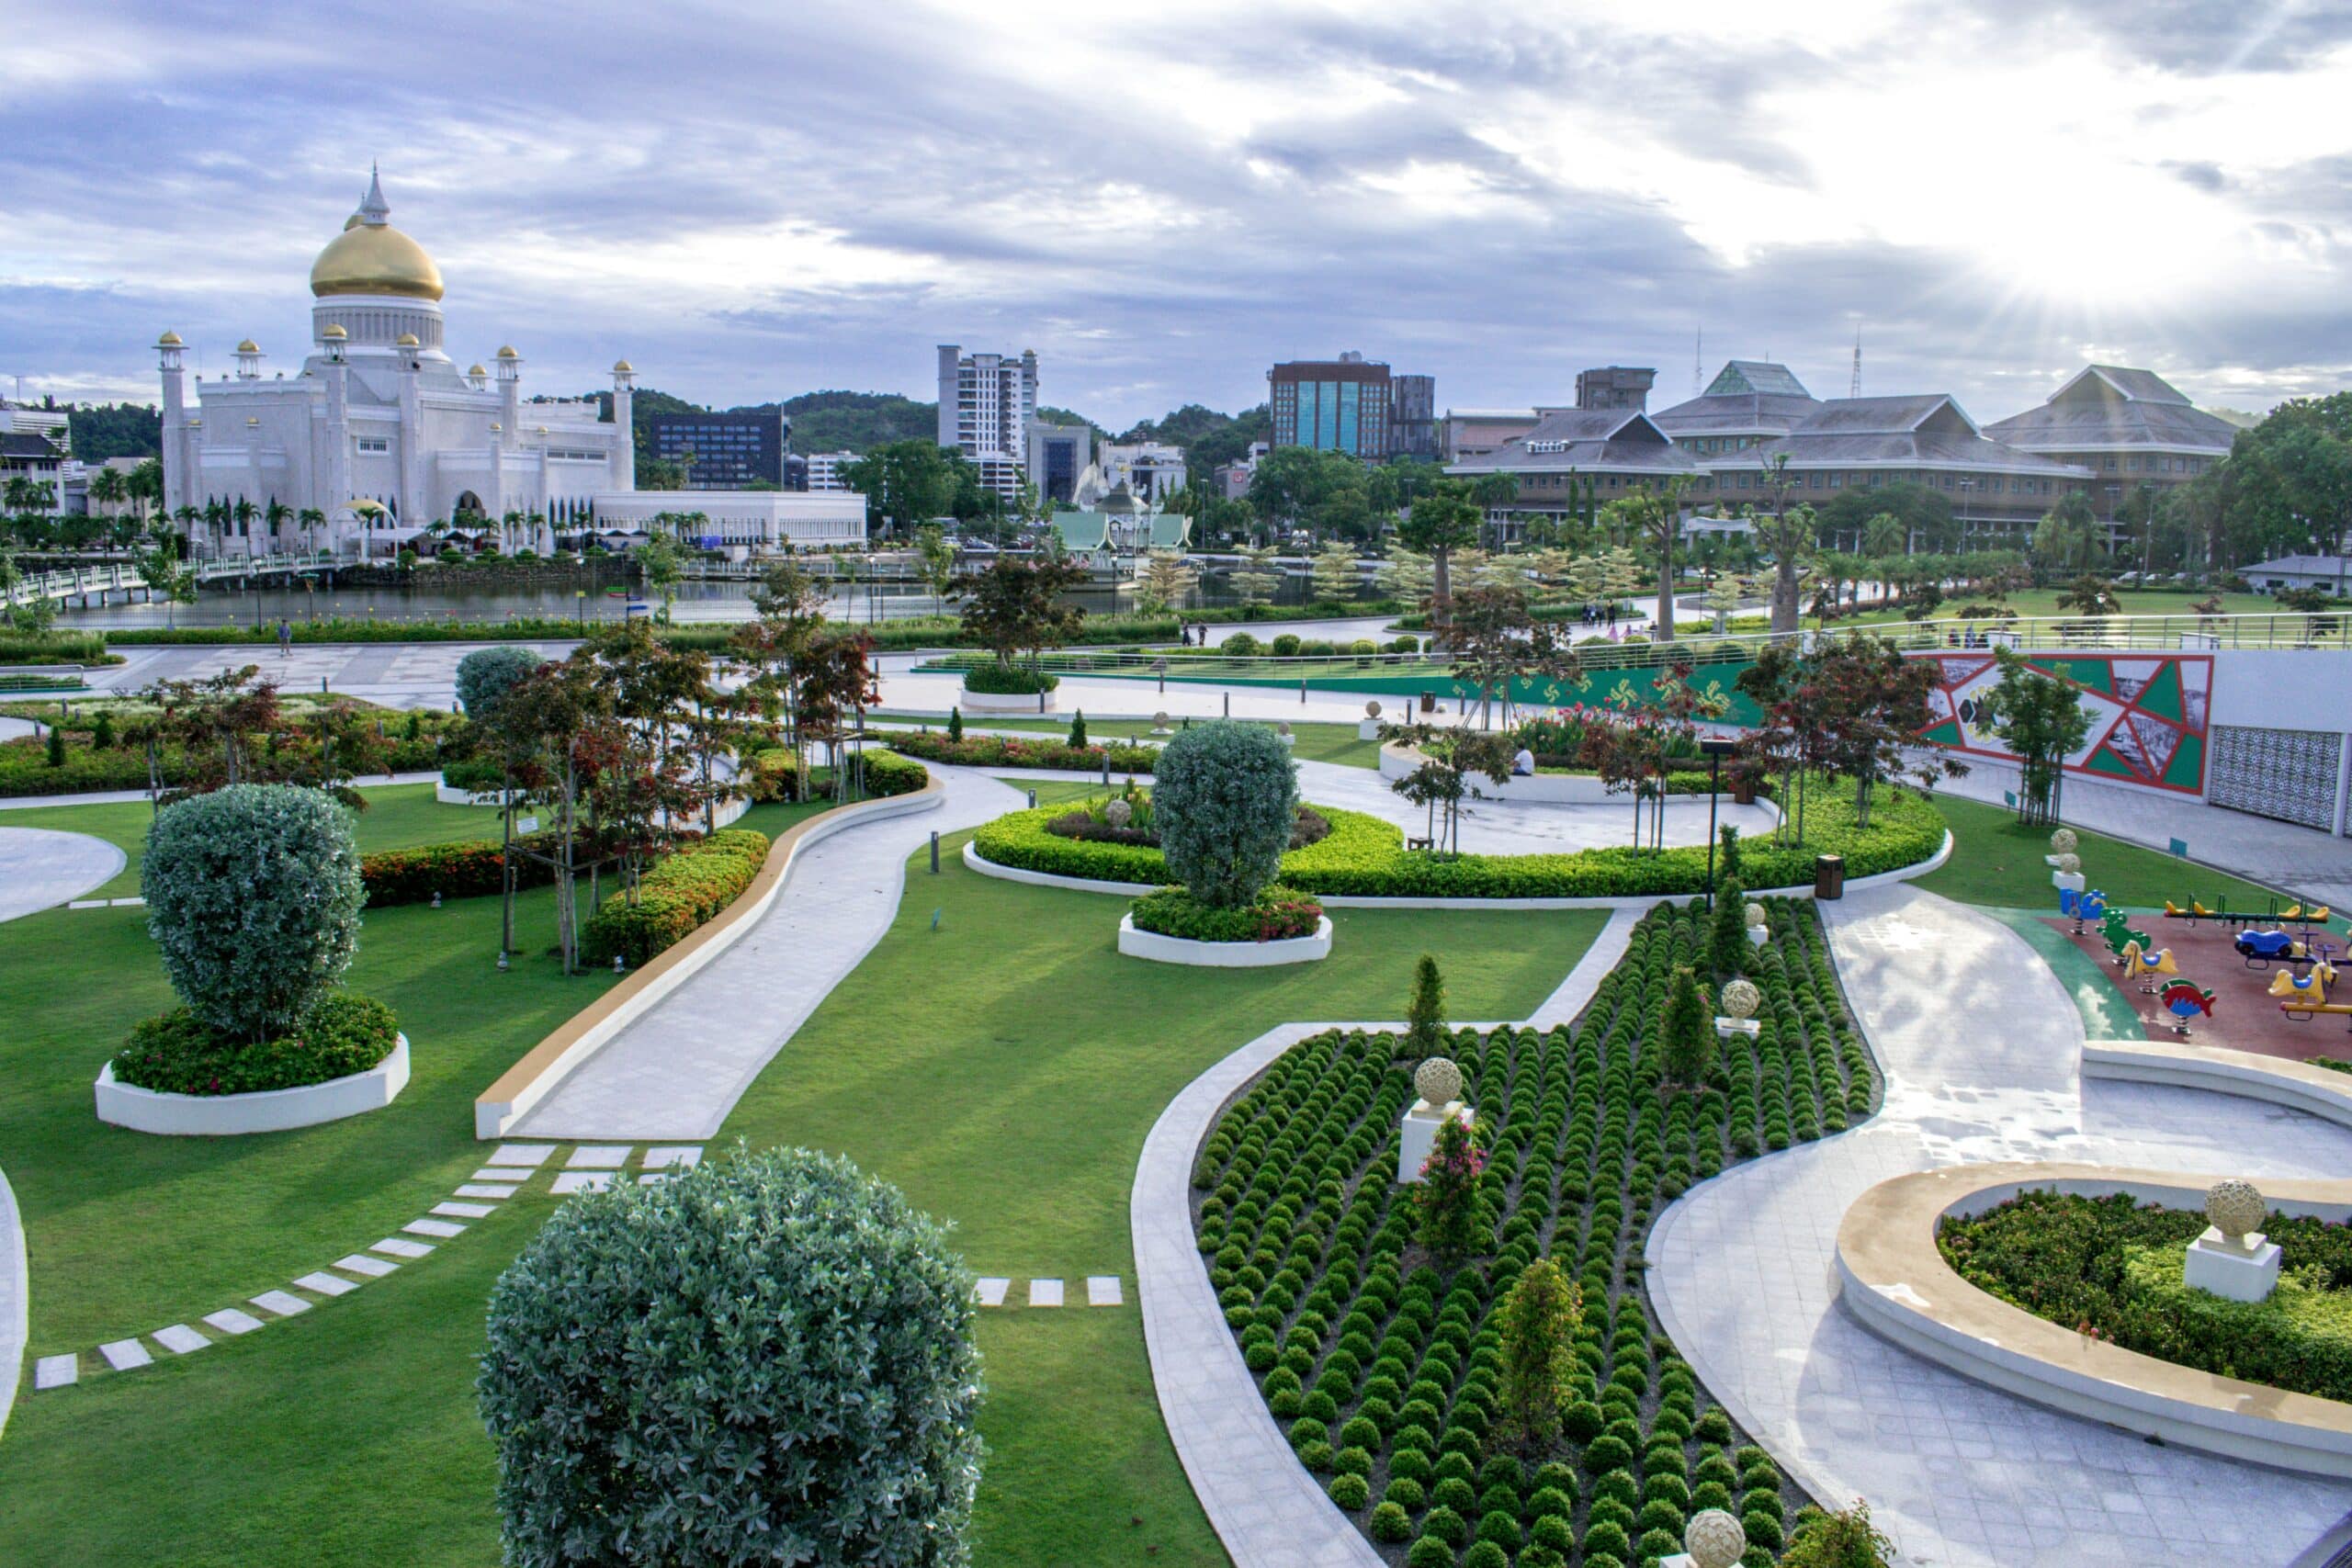 Vista da cidade de Bandar Seri Begawan, em Brunei, com um belo jardim a frente durante o dia e, ao fundo, tem um lago e em frente ao lago há uma enorme mesquita na cor branca, com teto dourado. Representa chip celular Brunei